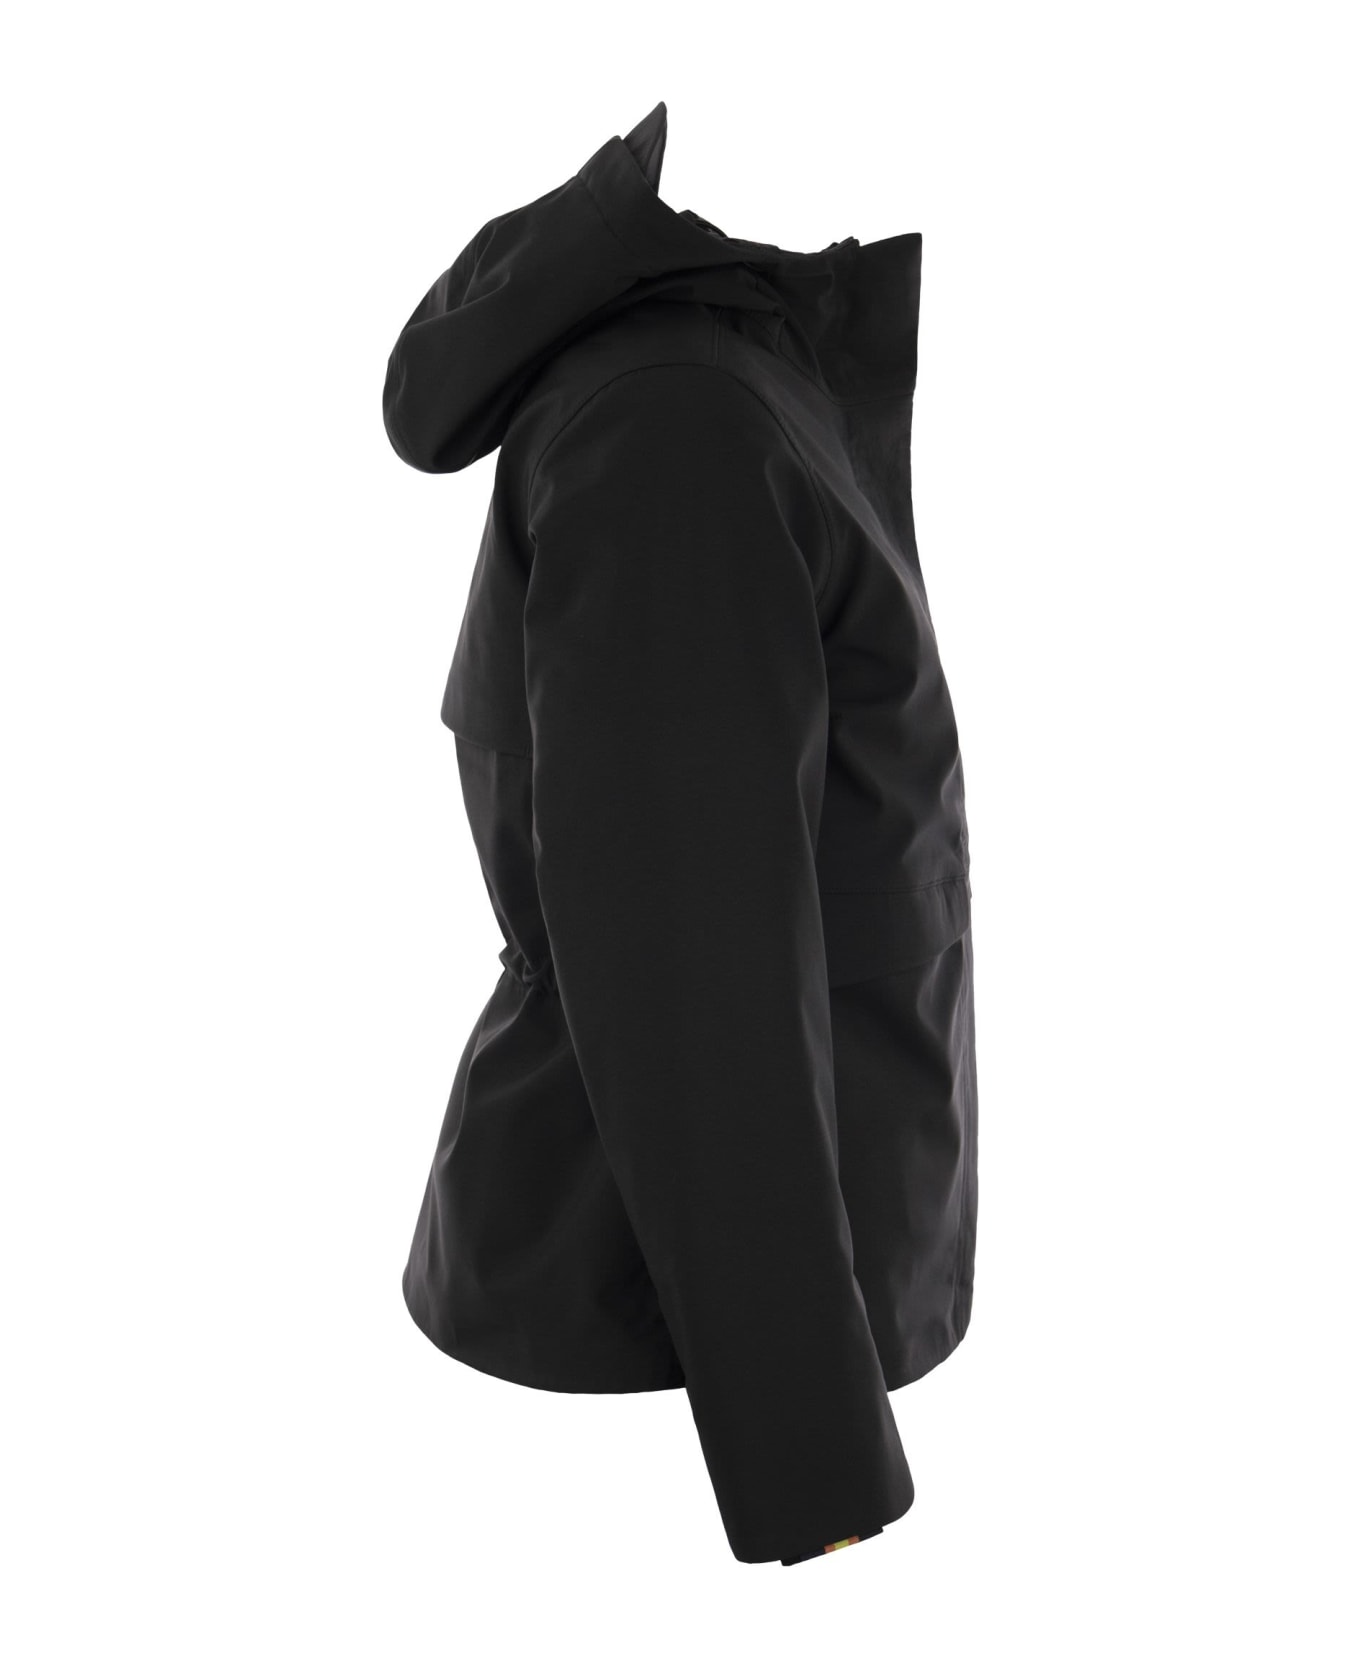 K-Way Dorel Bonded - Hooded Jacket - Black ジャケット